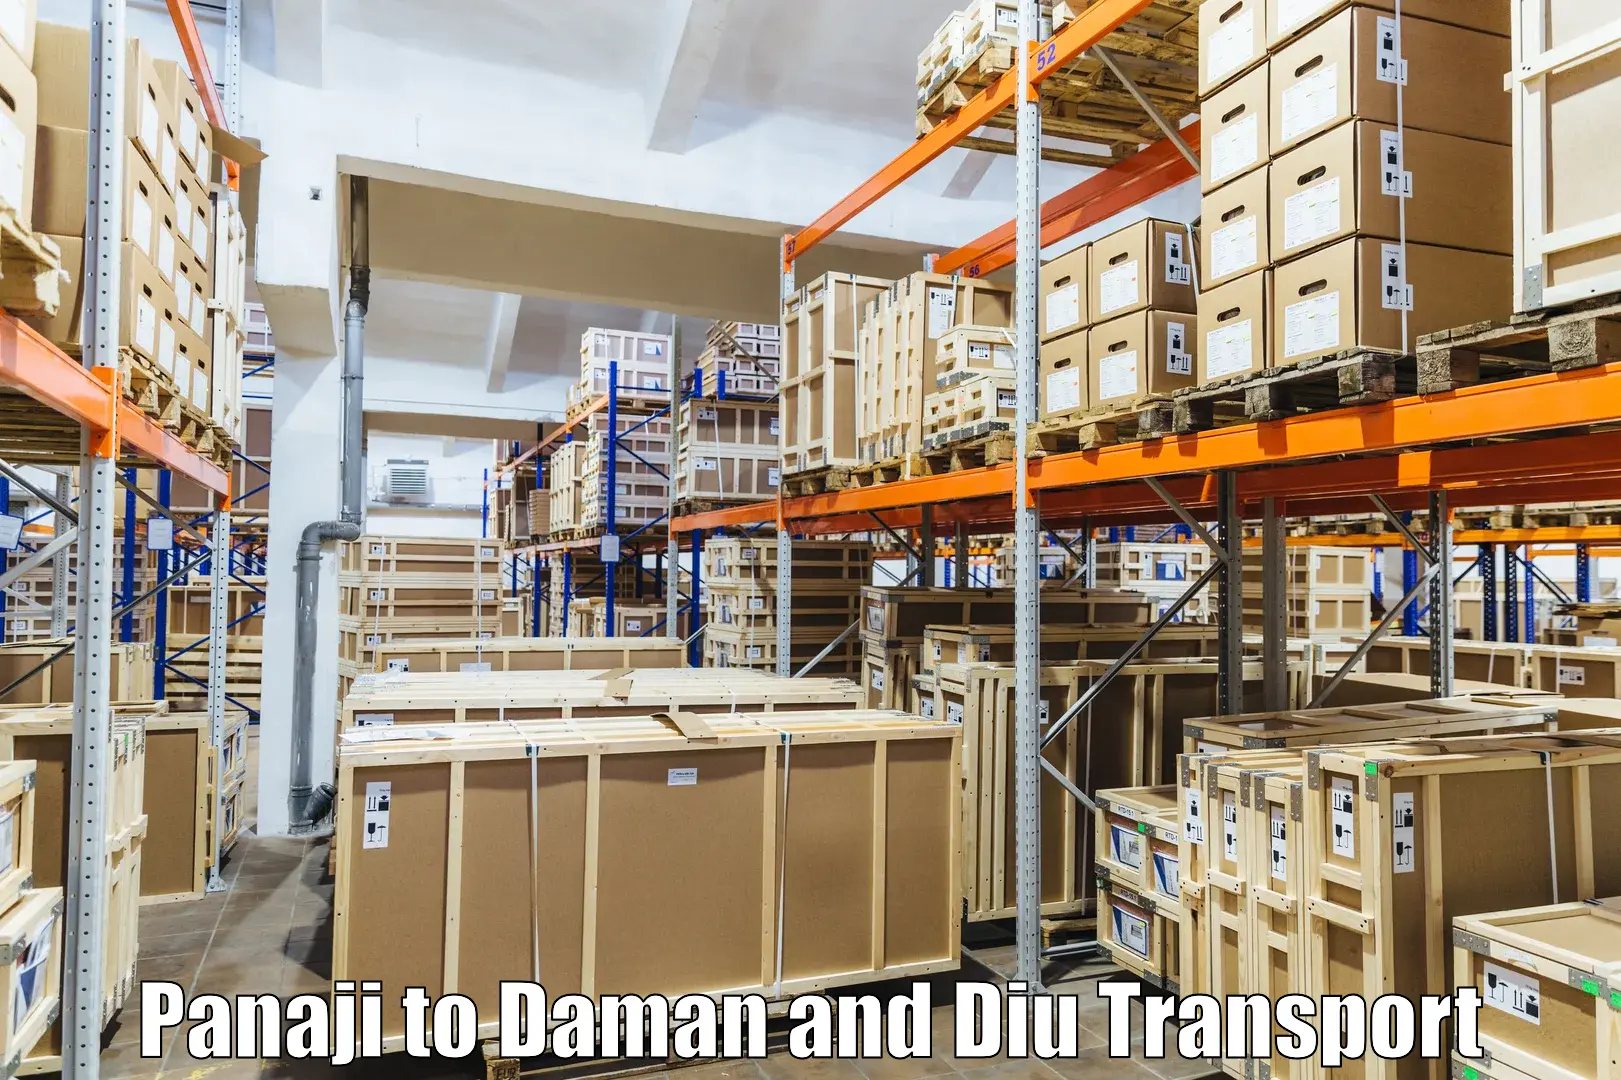 Cargo transportation services Panaji to Daman and Diu